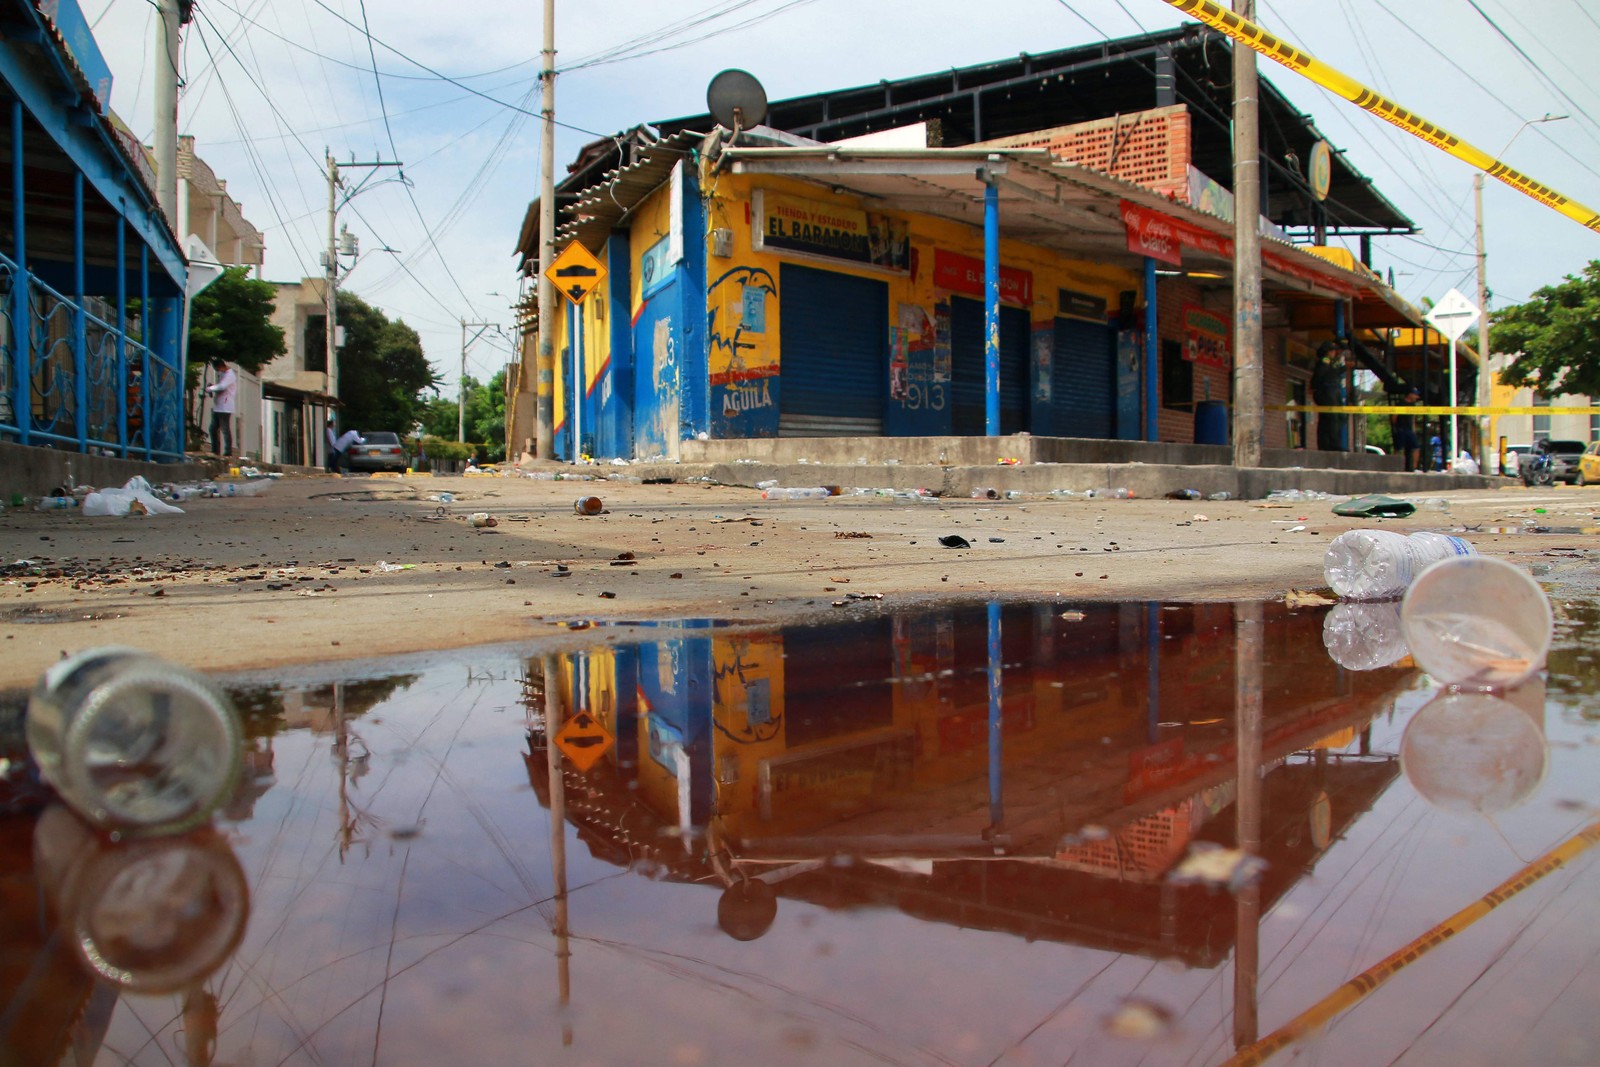 O segundo fato ocorreu na madrugada desta segunda em Barranquilla, onde seis pessoas morreram baleadas na saída de um bar — Foto: Jesus Rico / AFP